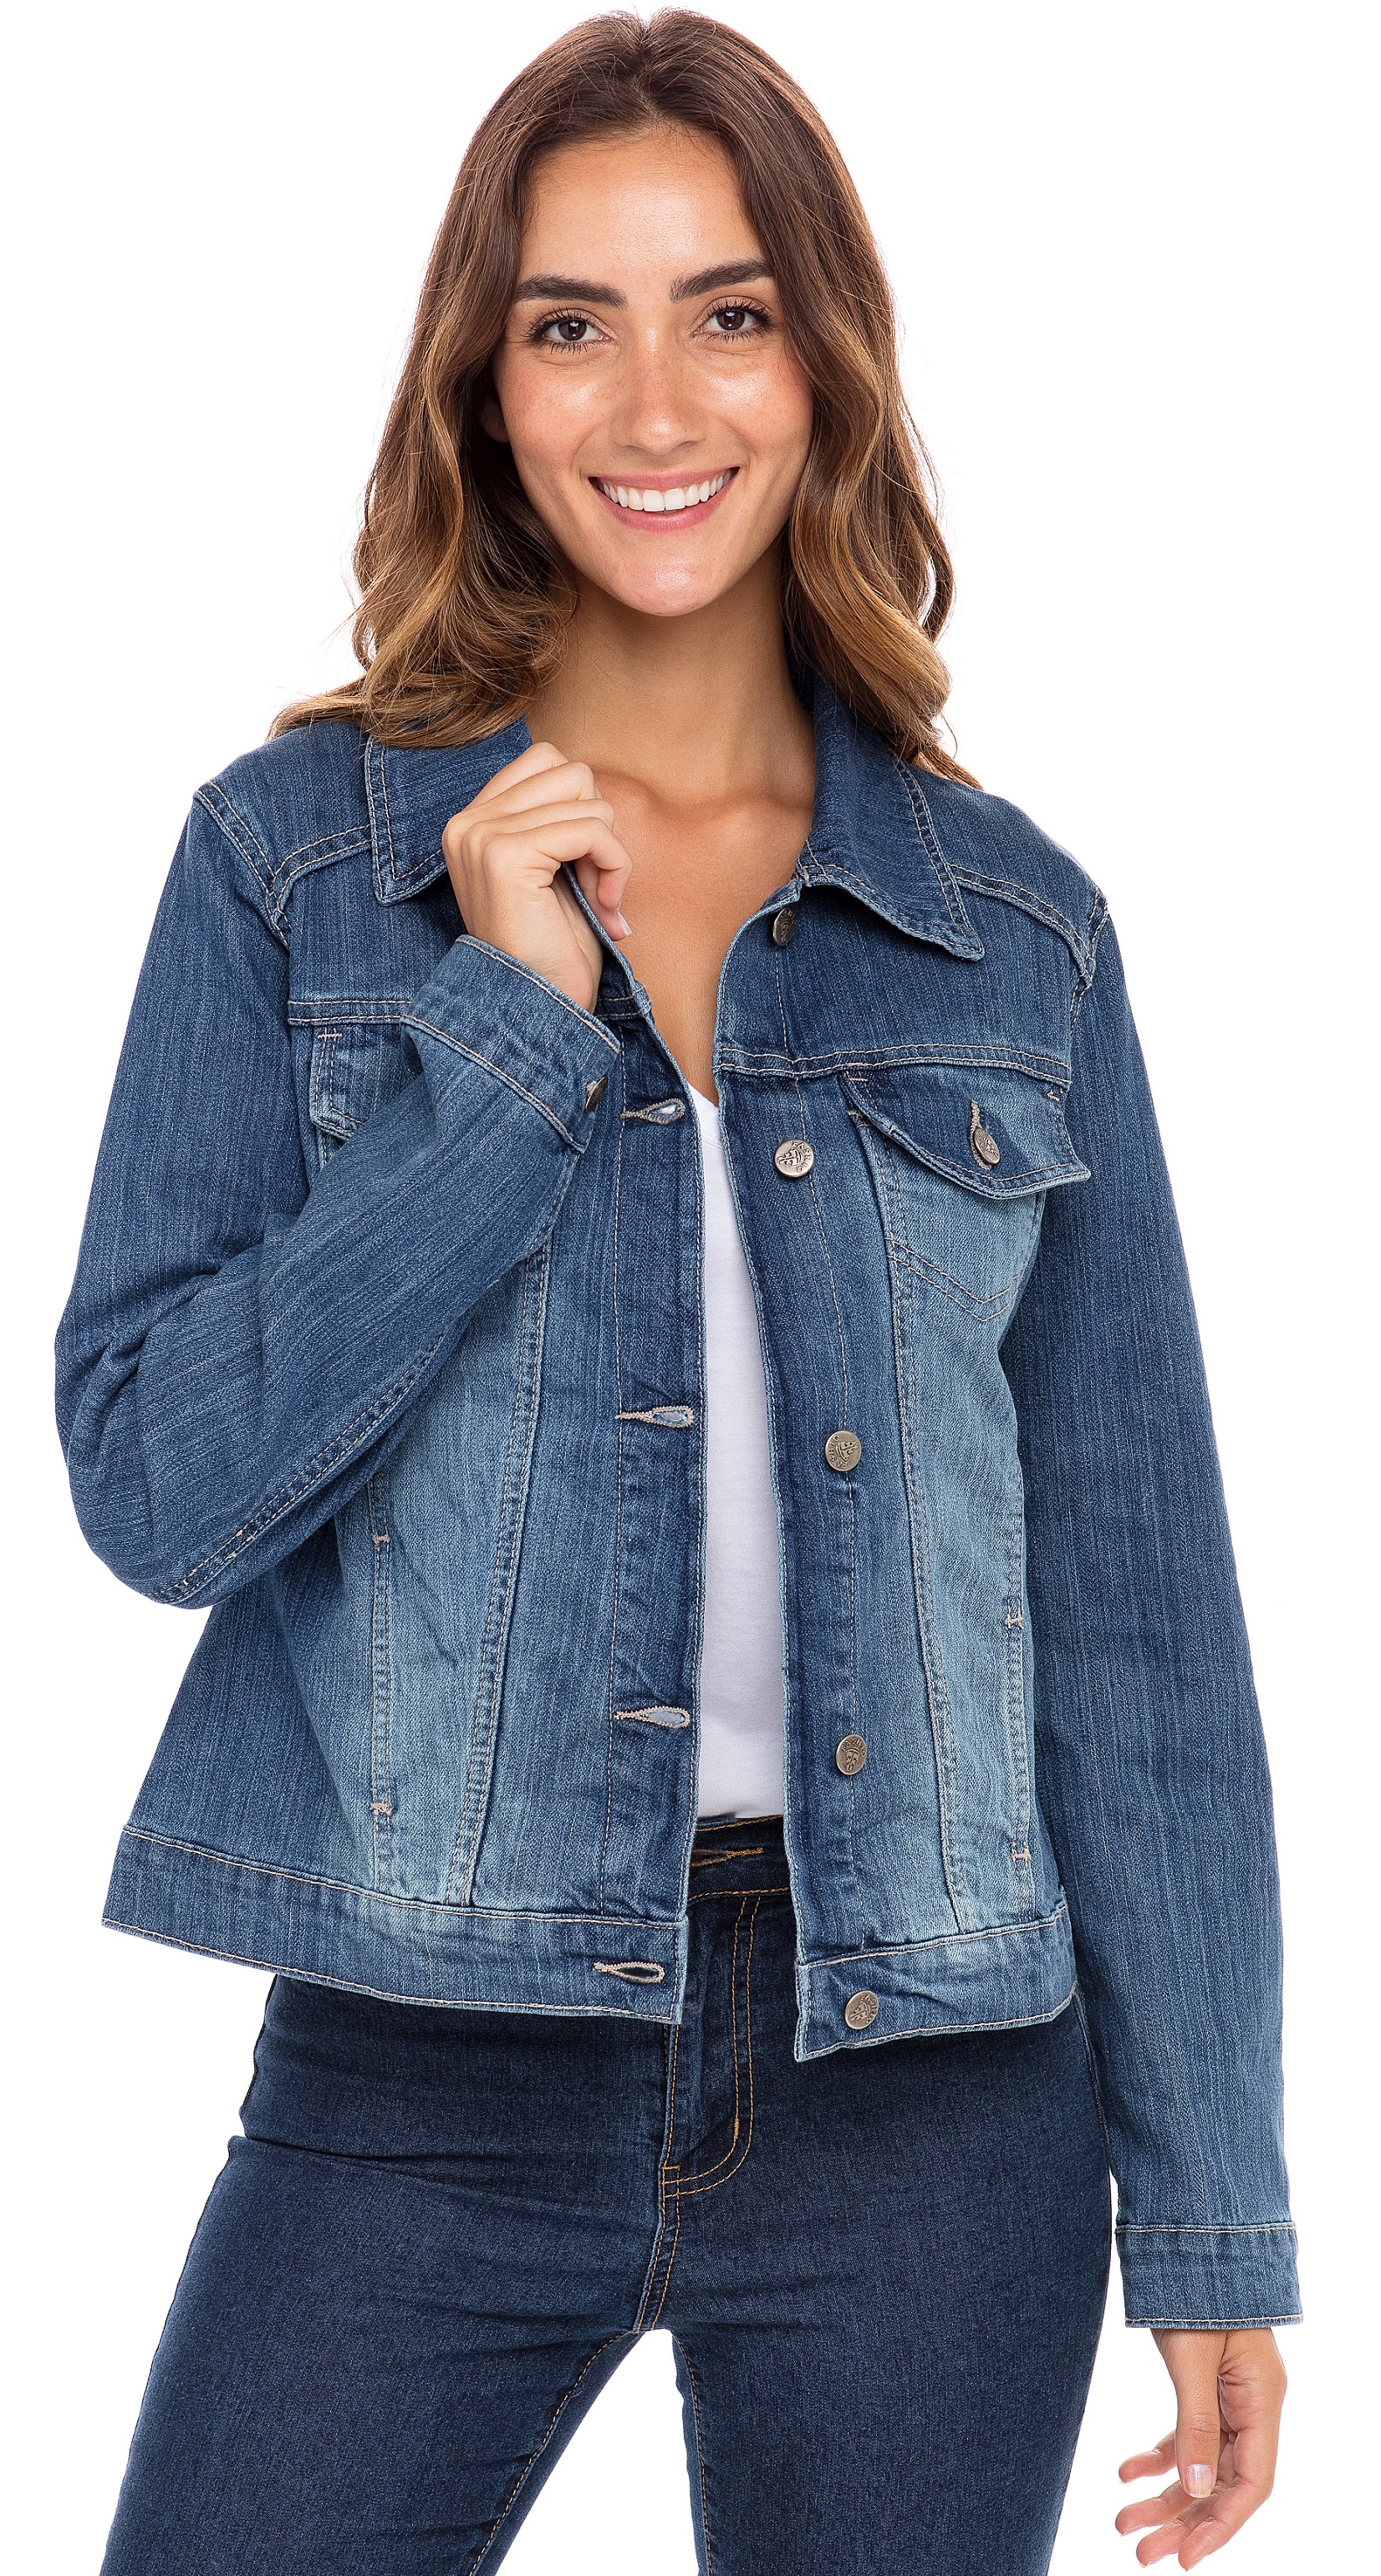 SKYLINEWEARS Women Denim Jacket Button UP Long Sleeve Ladies Stretch Trucker Jean Jackets - image 4 of 5